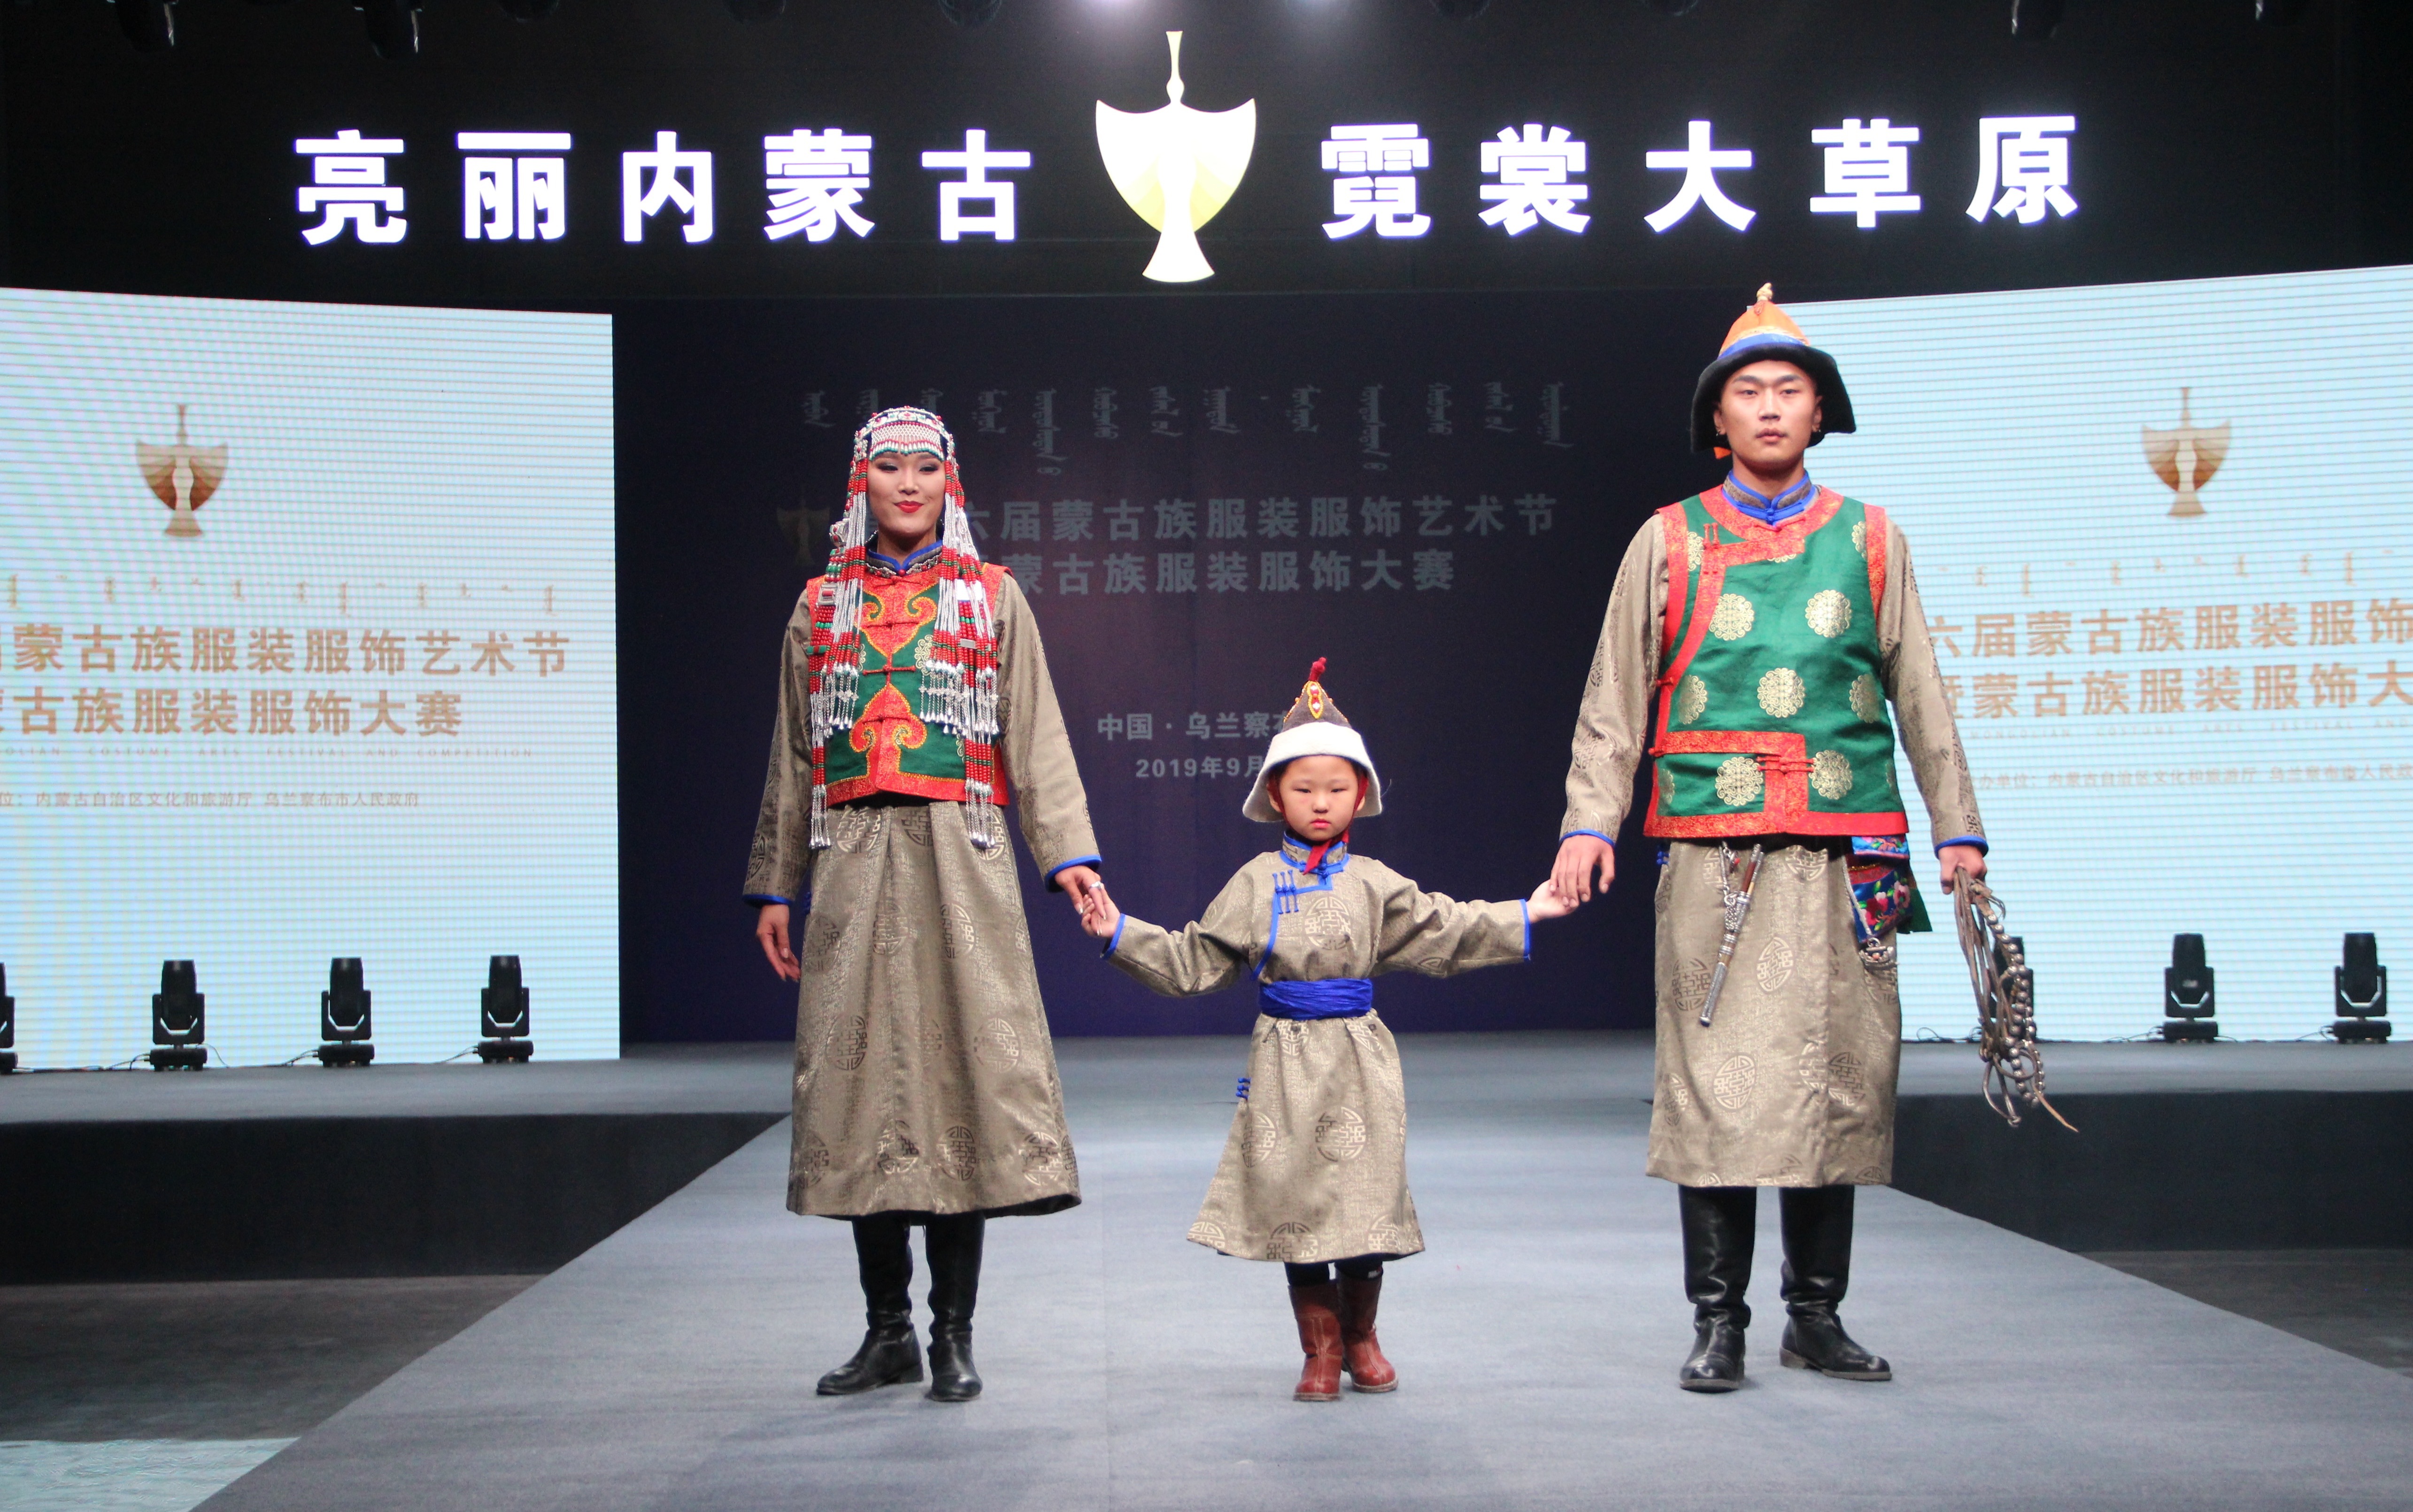 2020蒙古族服装服饰设计大赛 ᠮᠣᠩᠭᠤᠯ ᠦᠨᠳᠦᠰᠦᠲᠡᠨ ᠦ᠌ ᠬᠤᠪᠴᠠᠰᠤ ᠵᠠᠰᠠᠯ ᠤ᠋ᠨ ᠤᠷᠤᠯᠳᠤᠭᠠᠨ-草原元素 ...